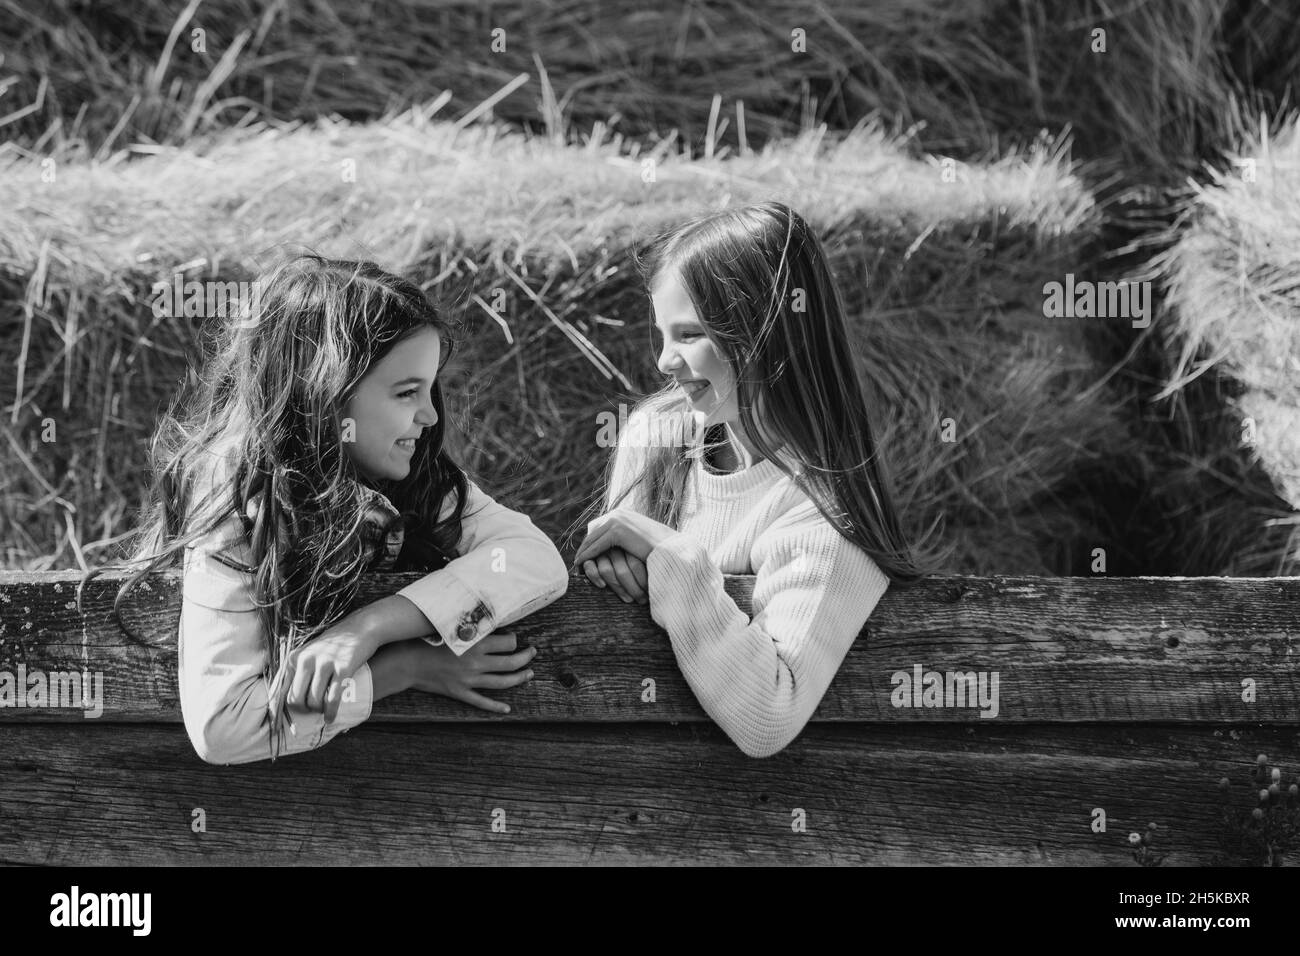 Immagine in bianco e nero di due giovani sorelle che si guardano l'una all'altra appoggiandosi su un binario di legno con balle di fieno sullo sfondo Foto Stock